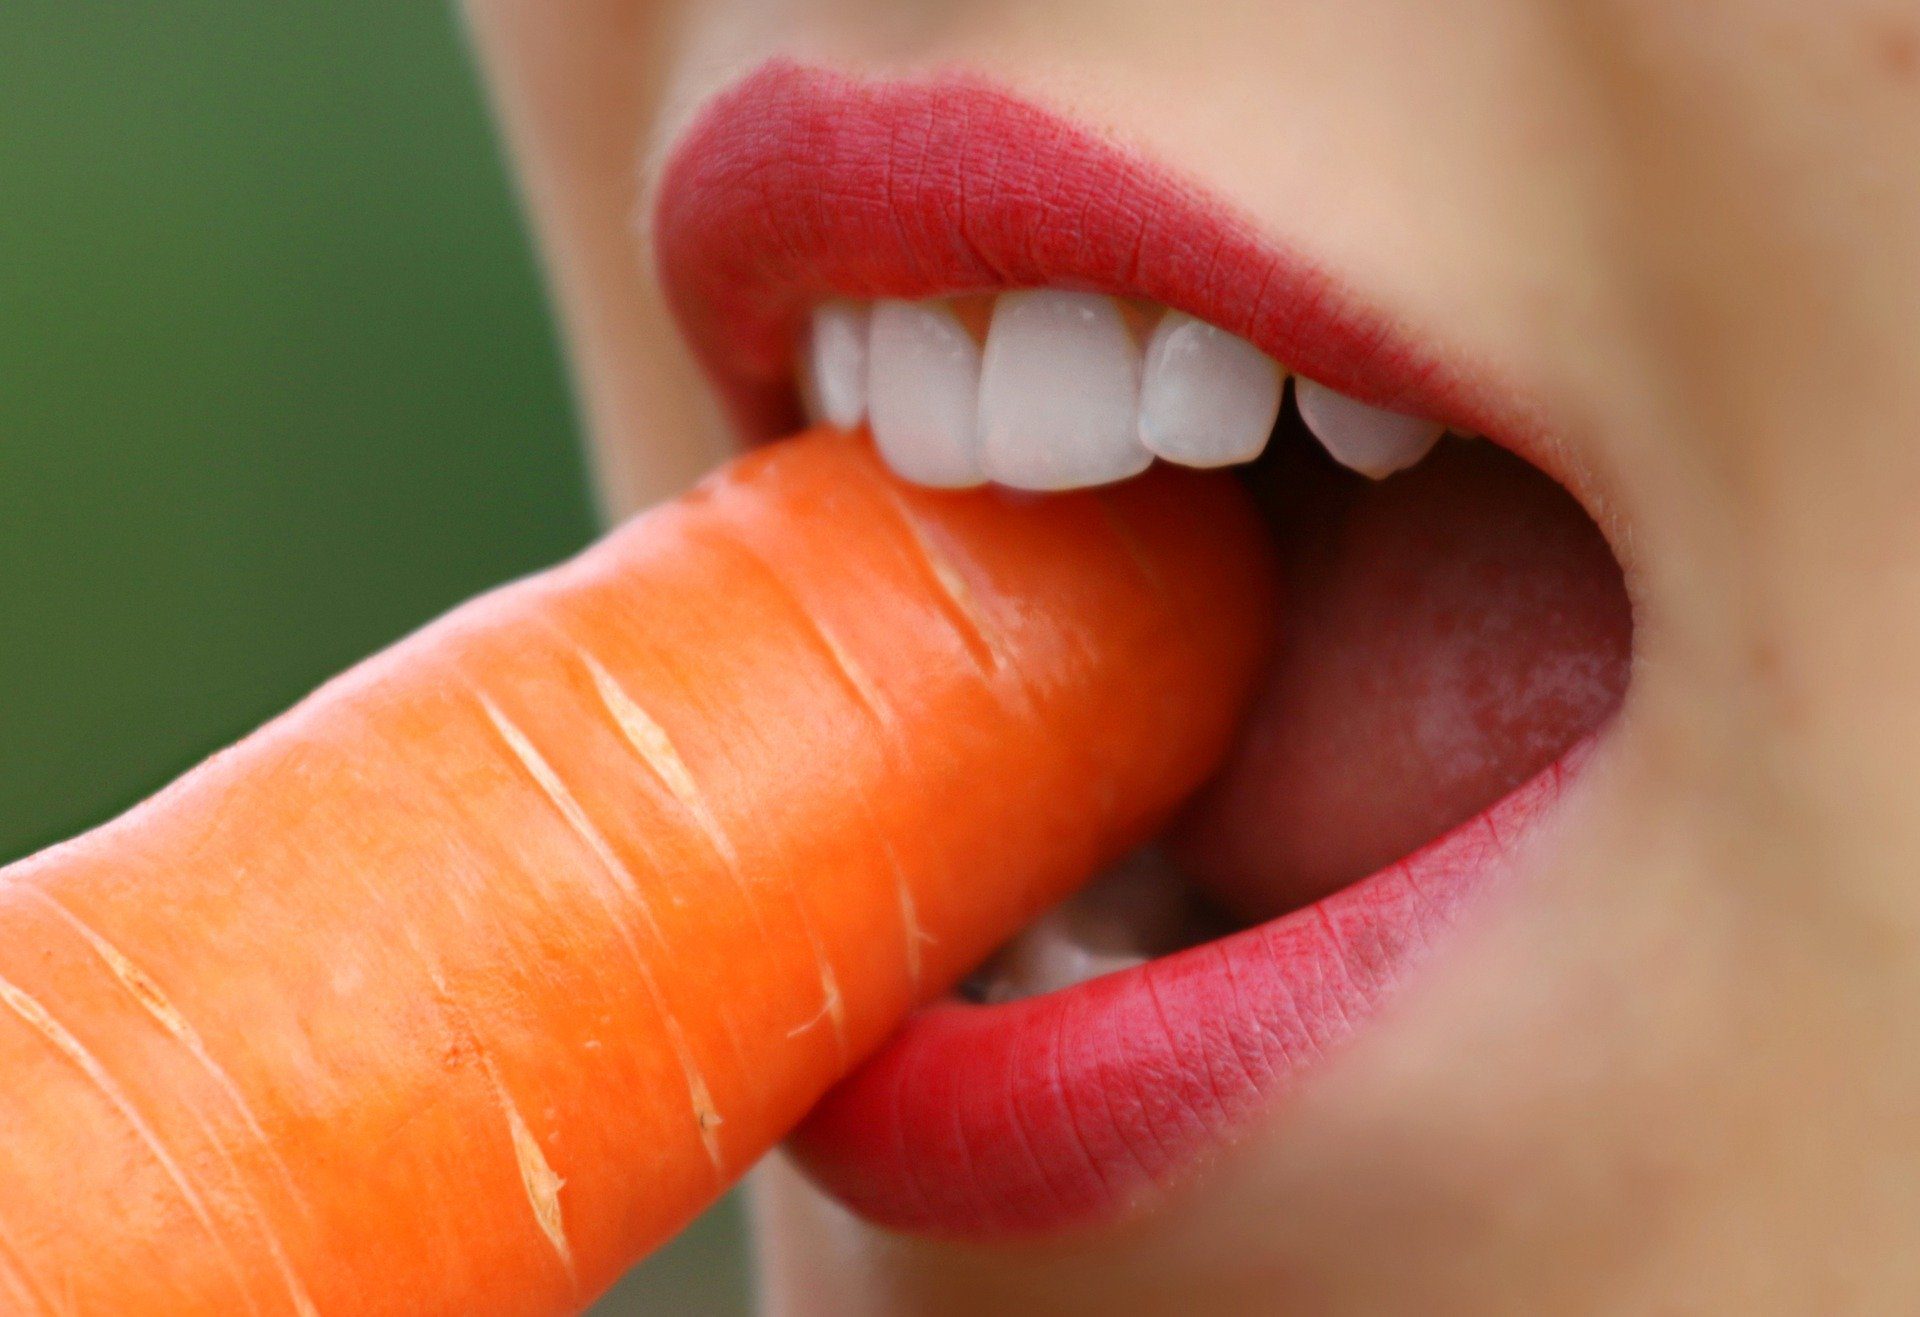 cenoura beneficios da cenoura para saude 1